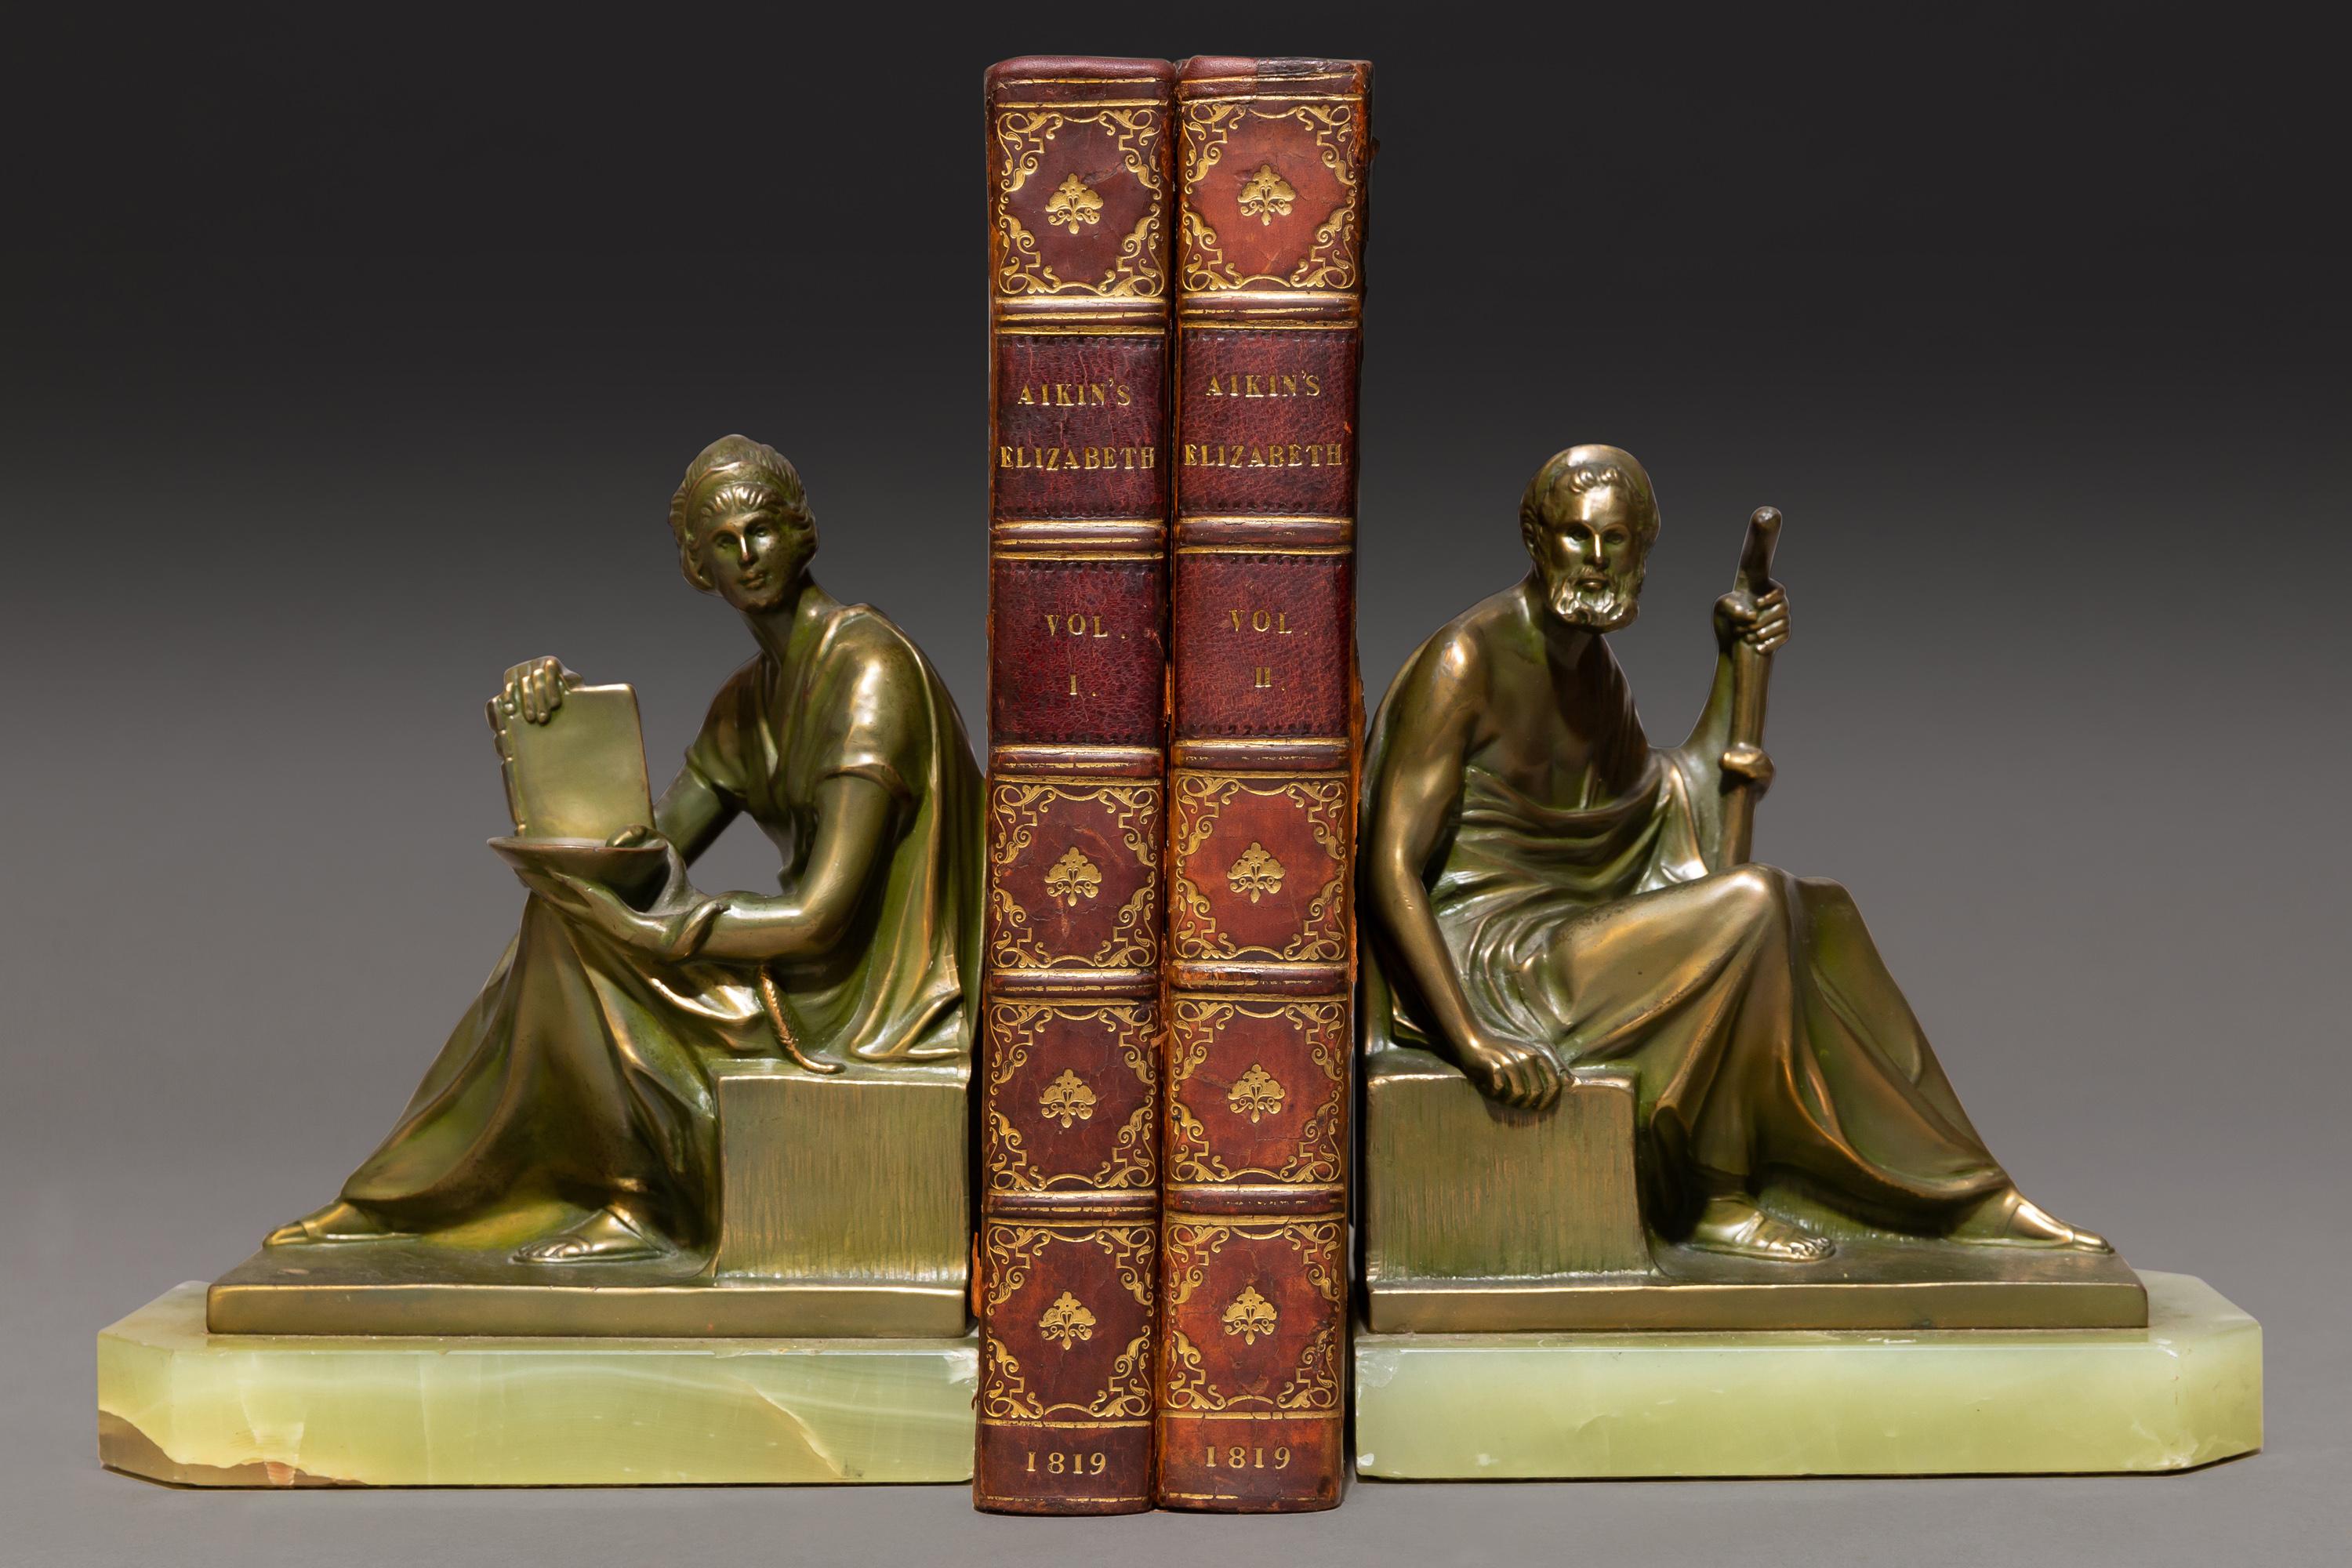 British 2 Volumes, Lucy Aikin, Memoirs of The Court of Queen Elizabeth